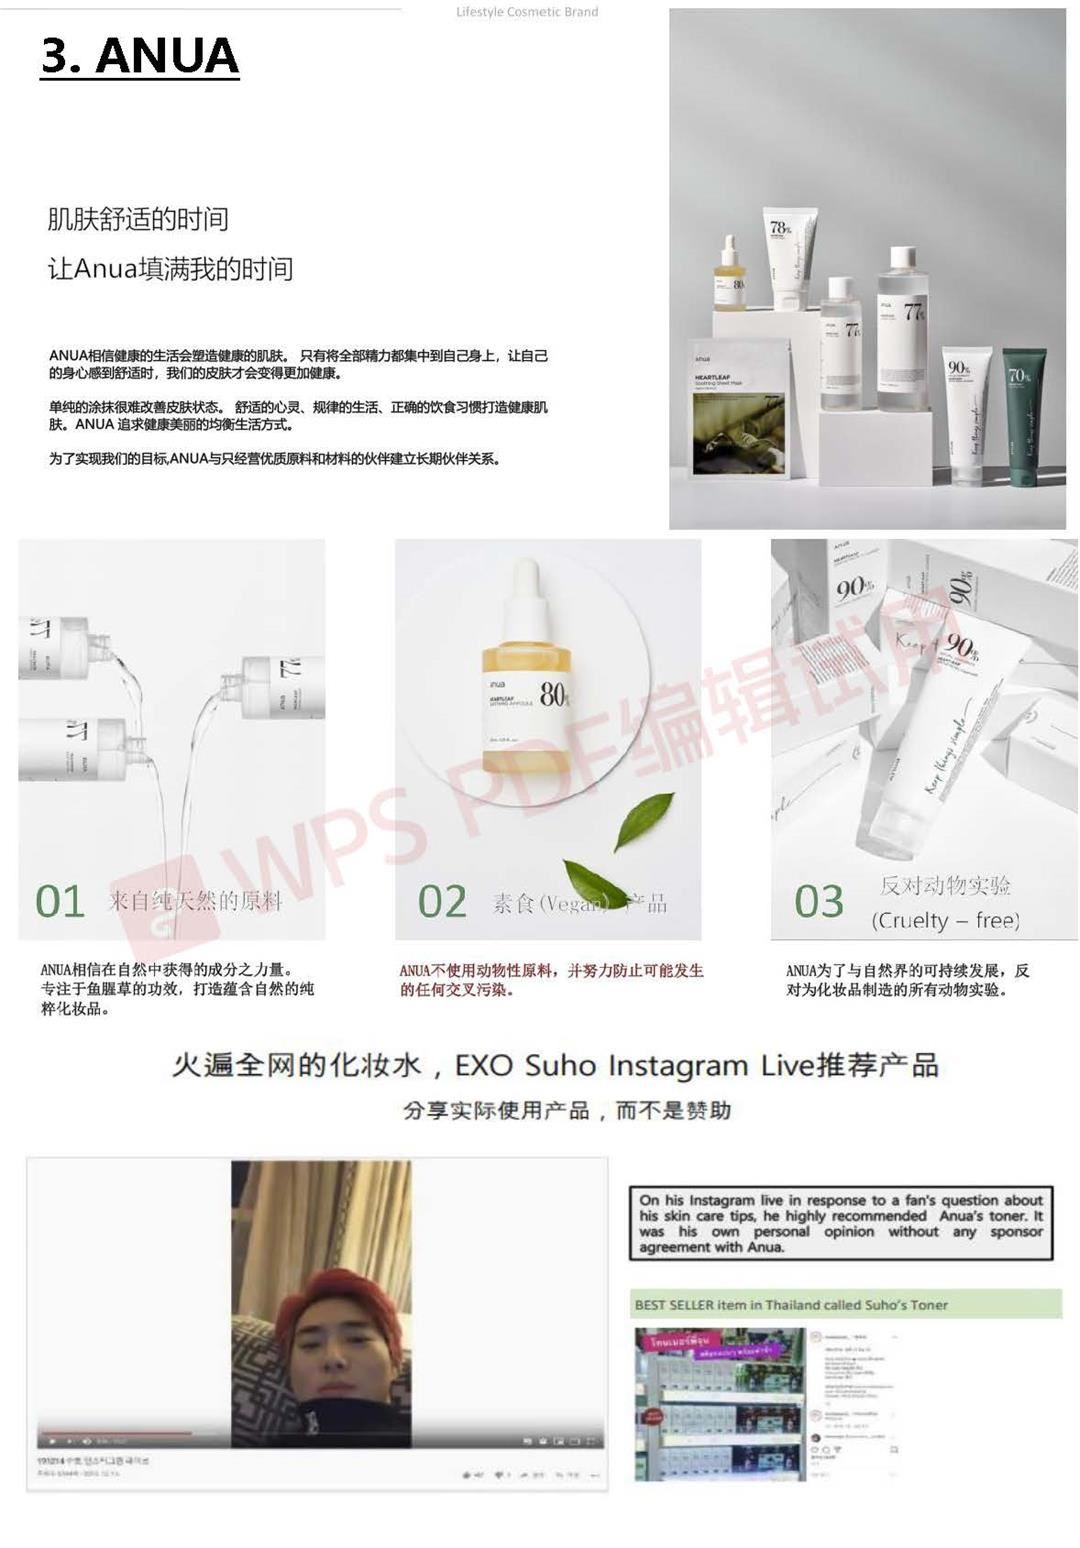 2021 중국(상해)화장품시장개척지원_8월4일 (2)_加水印_页面_05.jpg